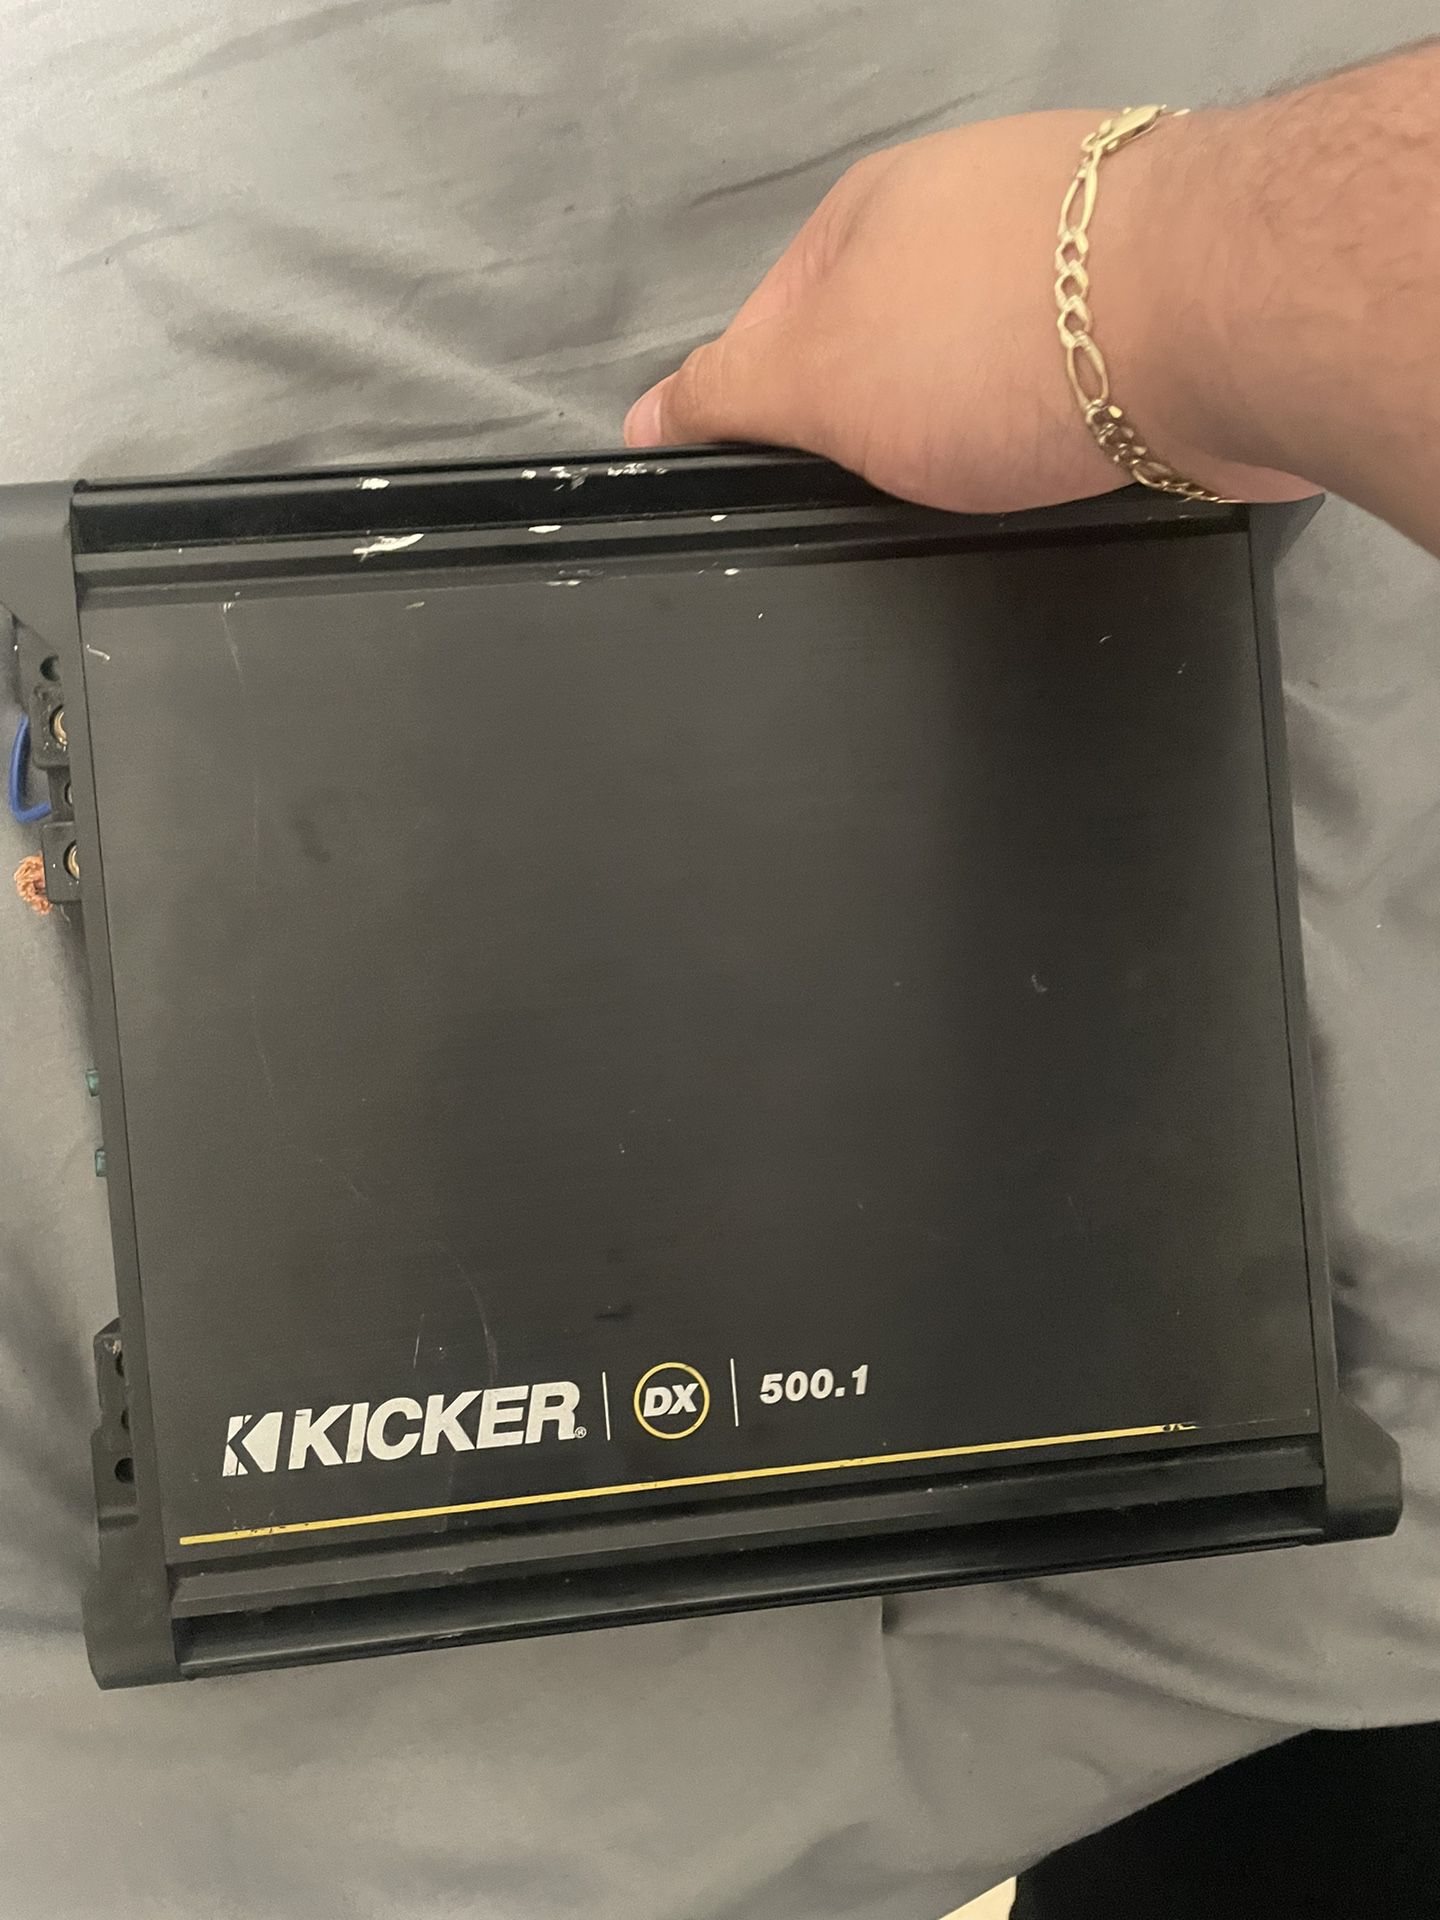 kicker amplifier